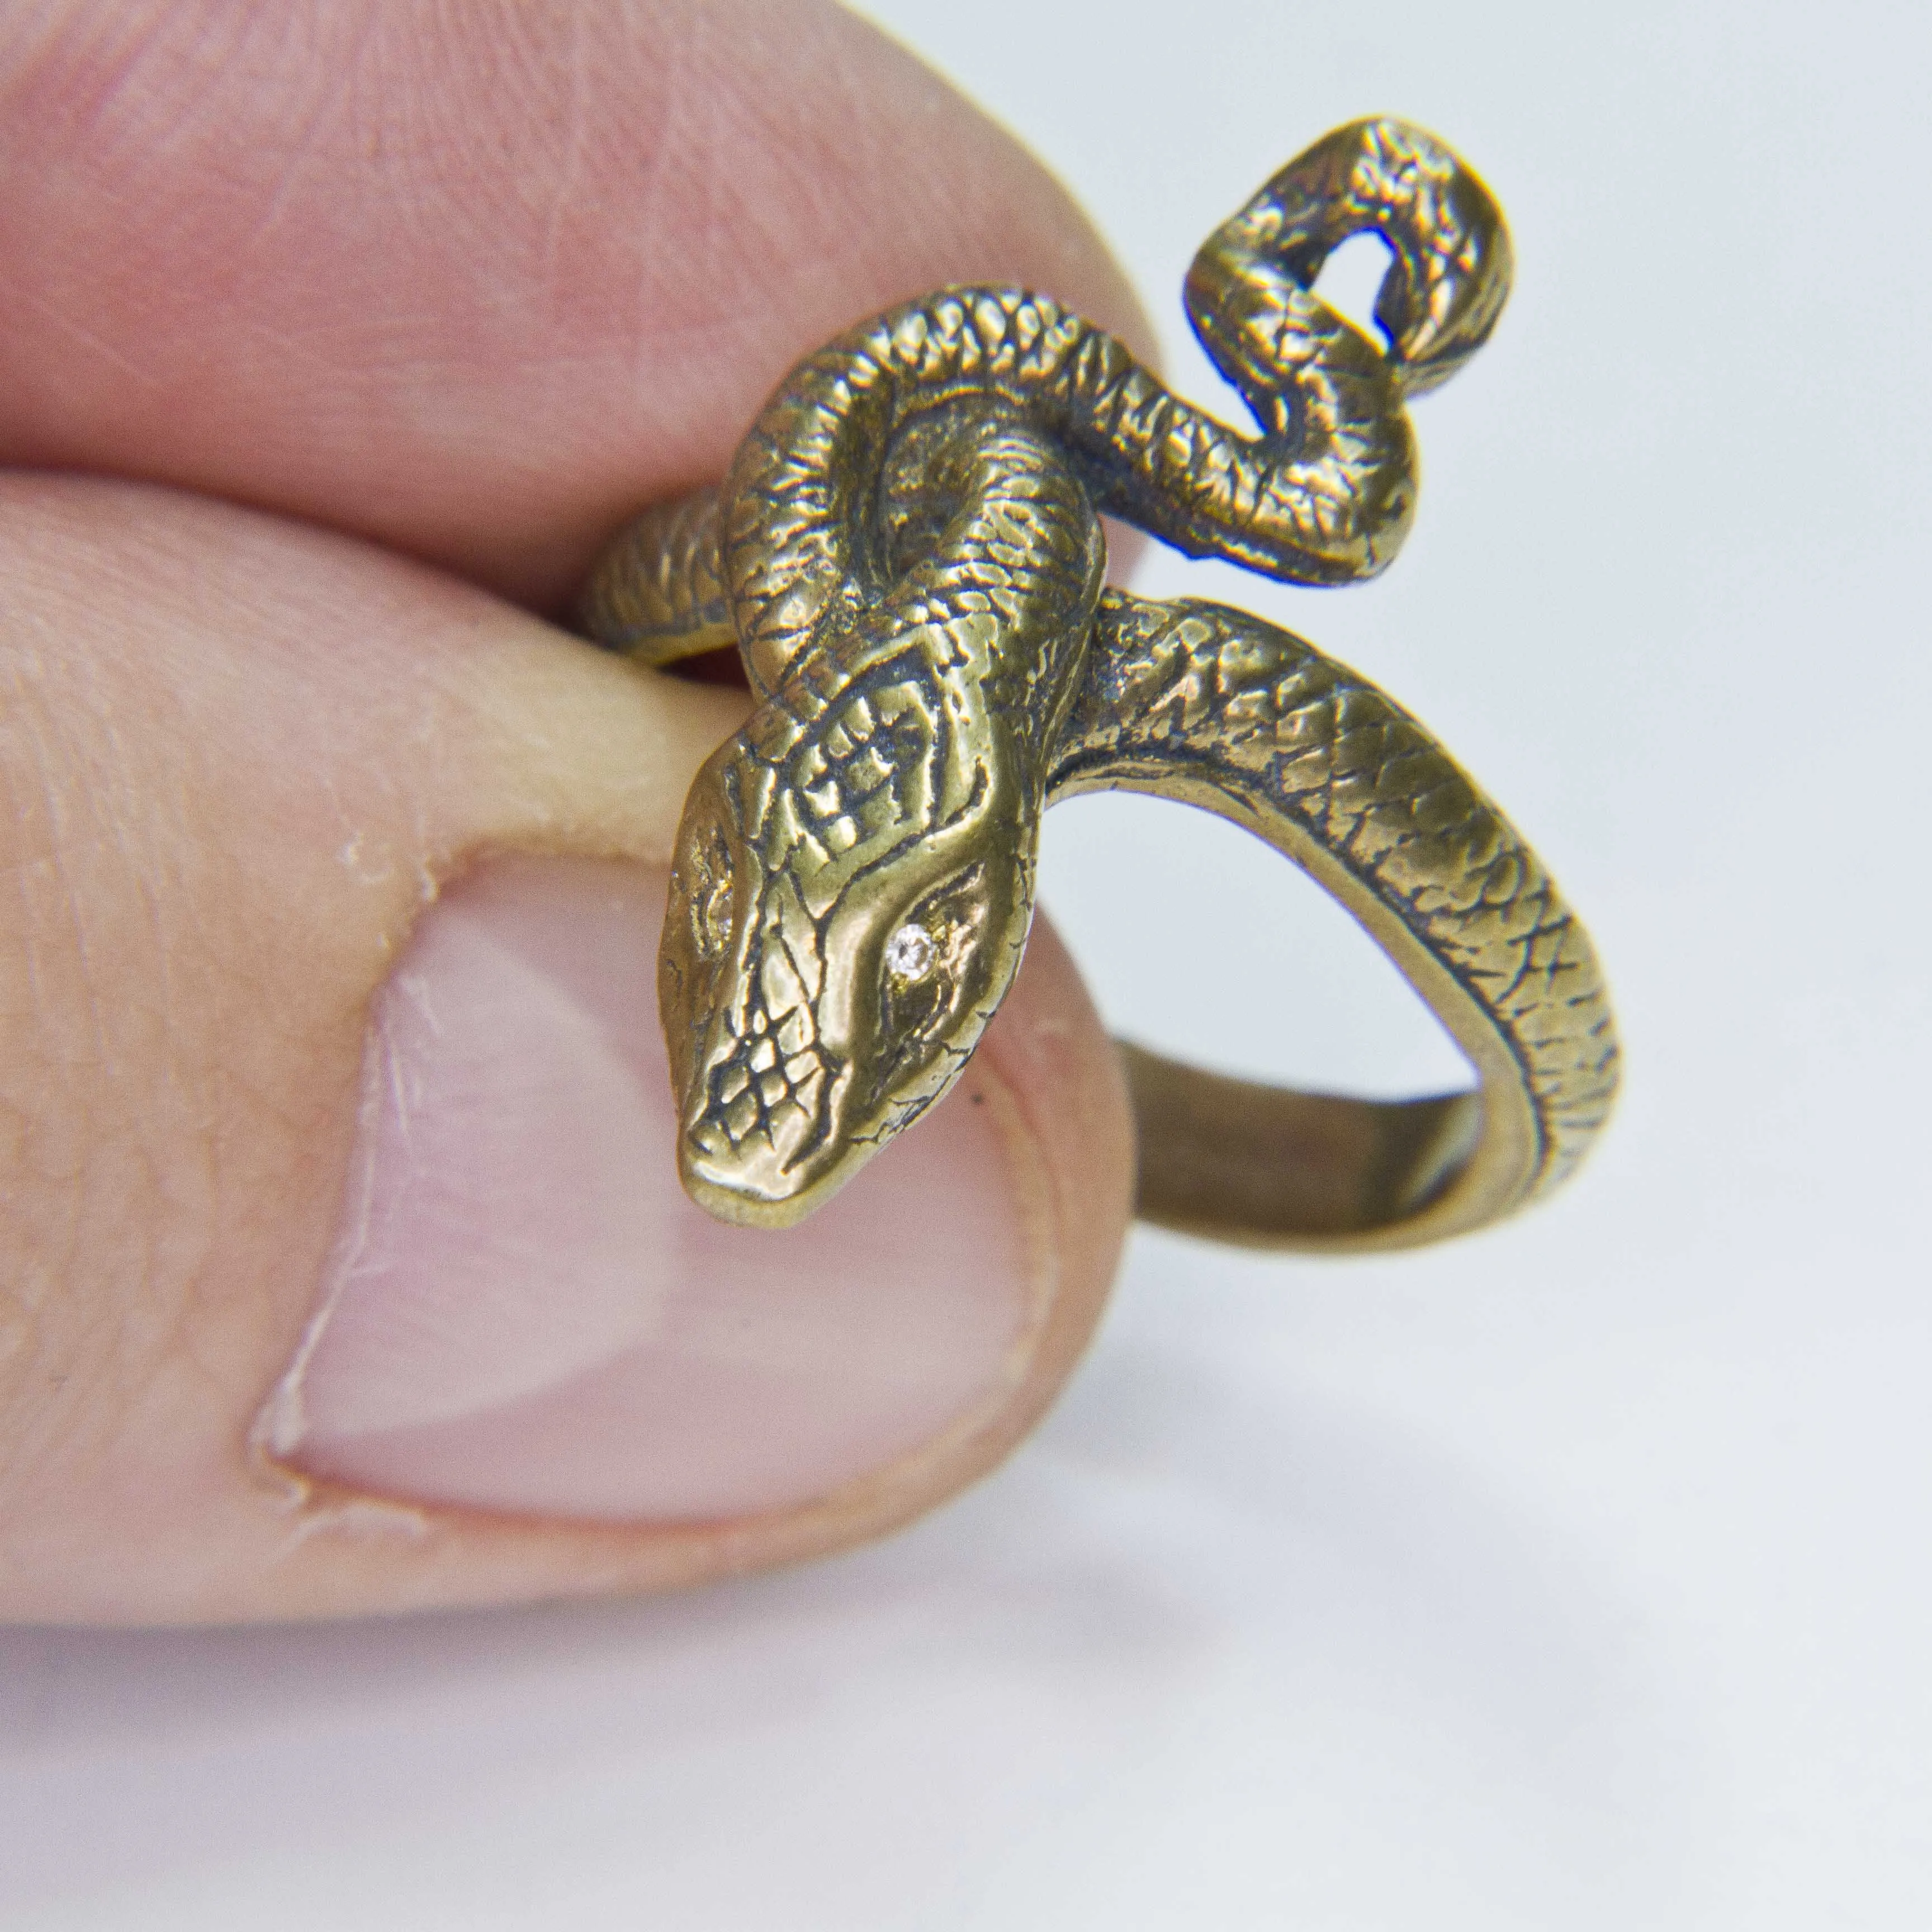 Кольцо жадного змея dark. Кольцо змея серебро. Кольцо змея из серебра. ДС 1 кольцо с серебряным змеем. Серьги Айленд соул змея с кольцом.